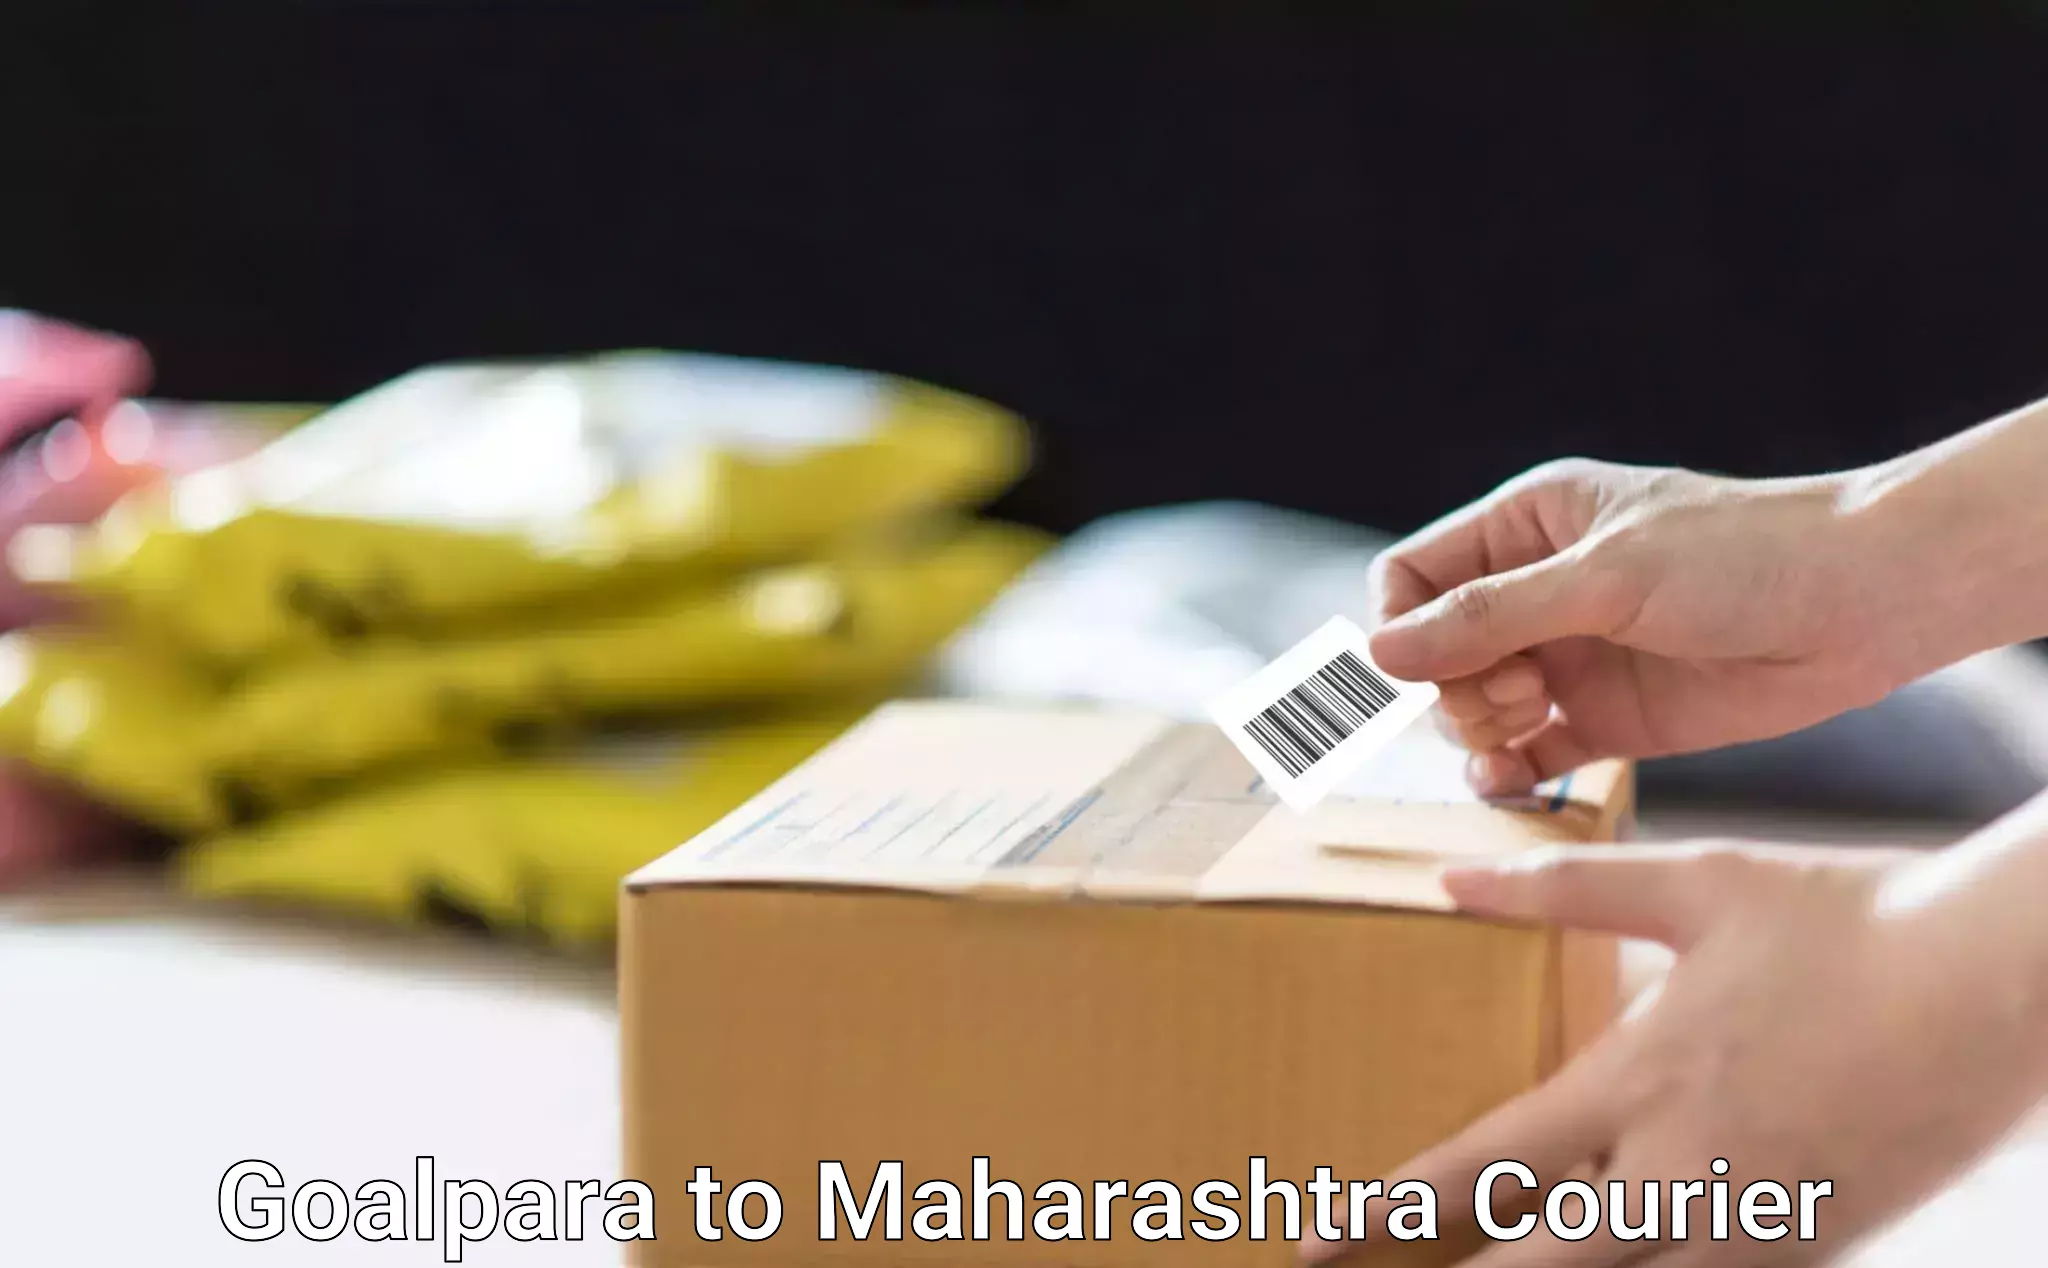 Efficient parcel service Goalpara to Walchandnagar